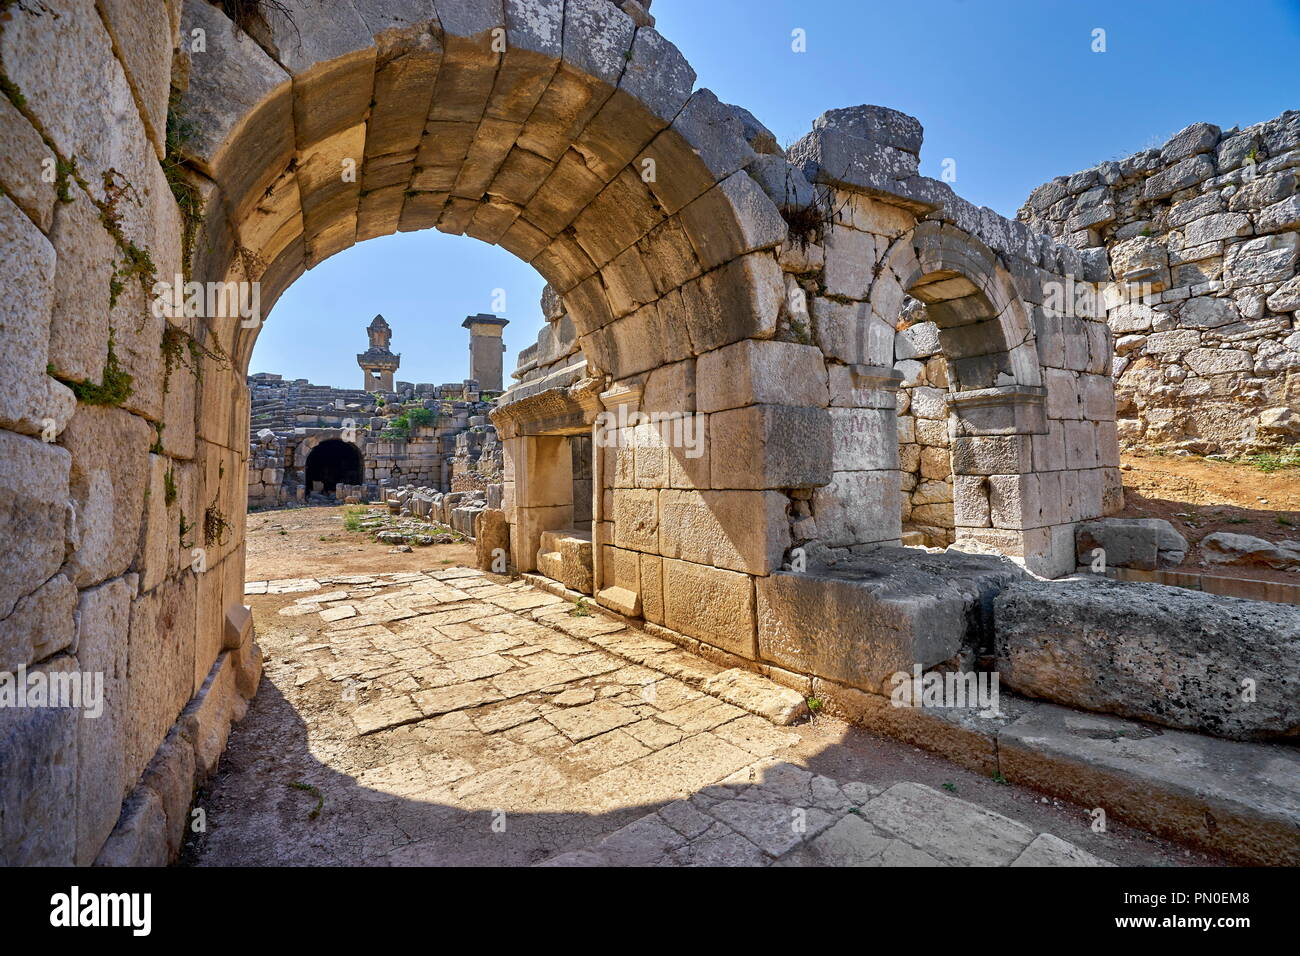 Ruin of Roman Ampitheatre, Xanthos, Turkey Stock Photo